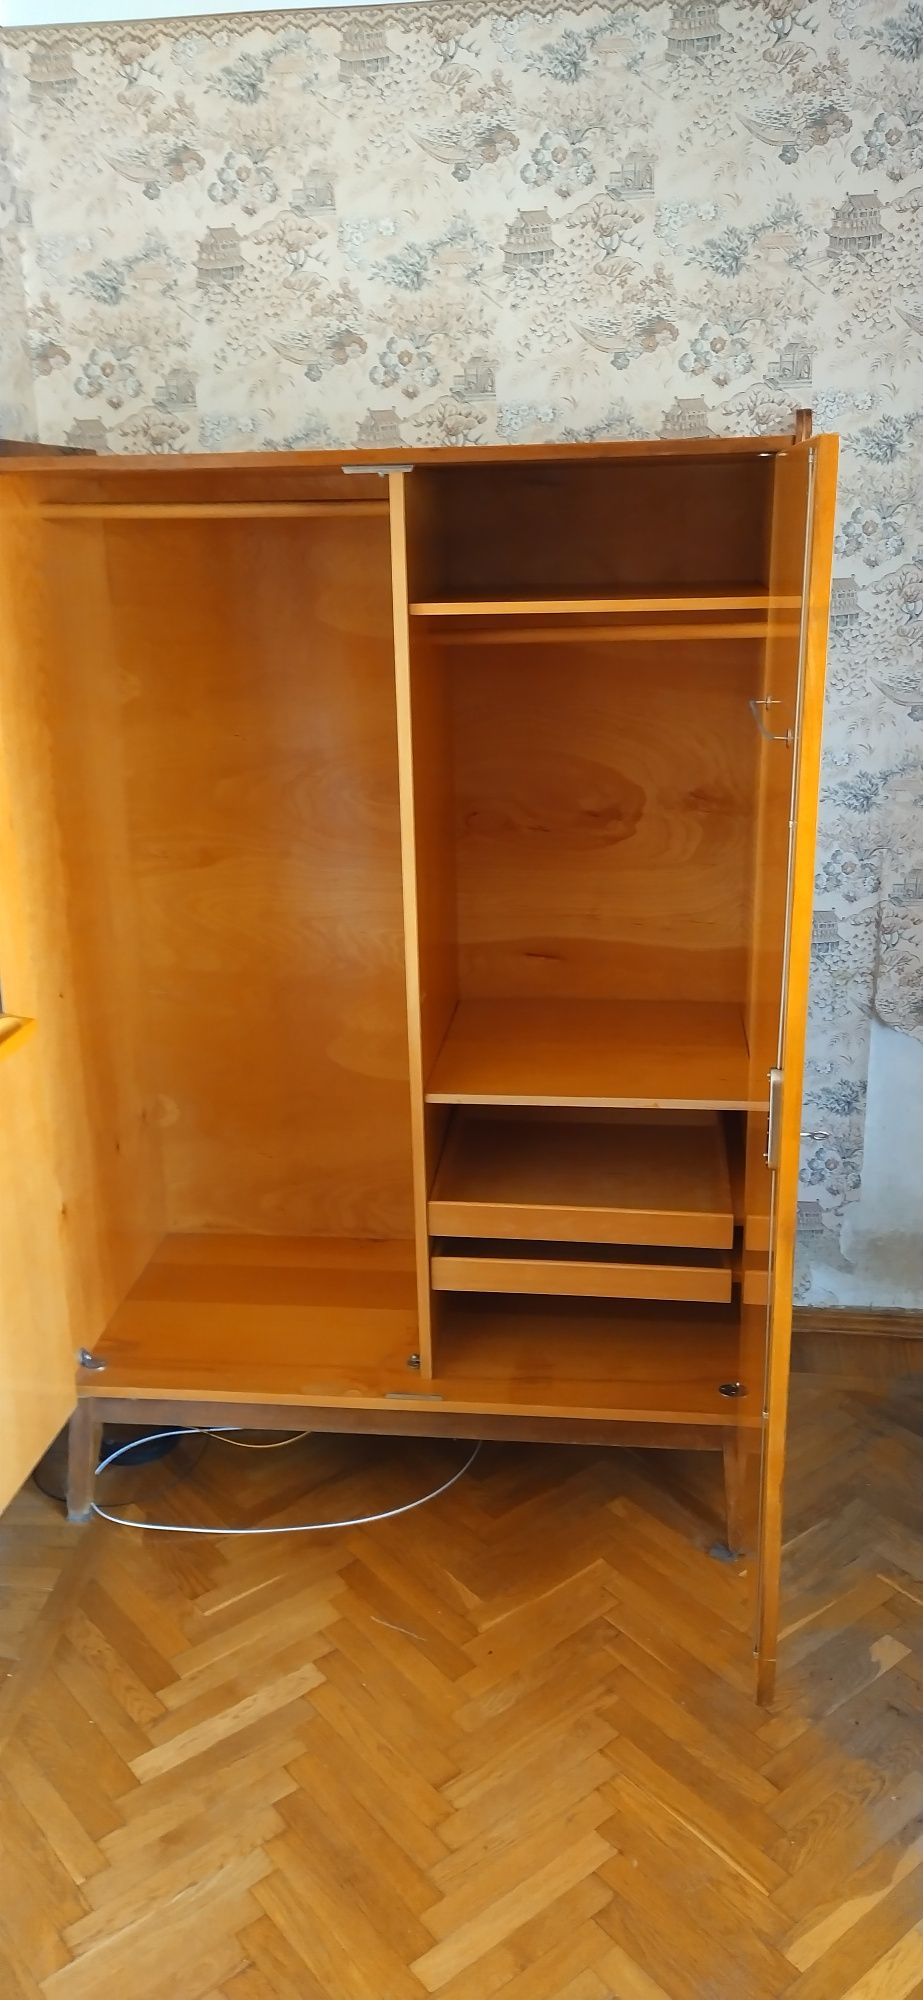 Шкаф из набора Татра Правенец (уже разобран и готов к выгрузке)